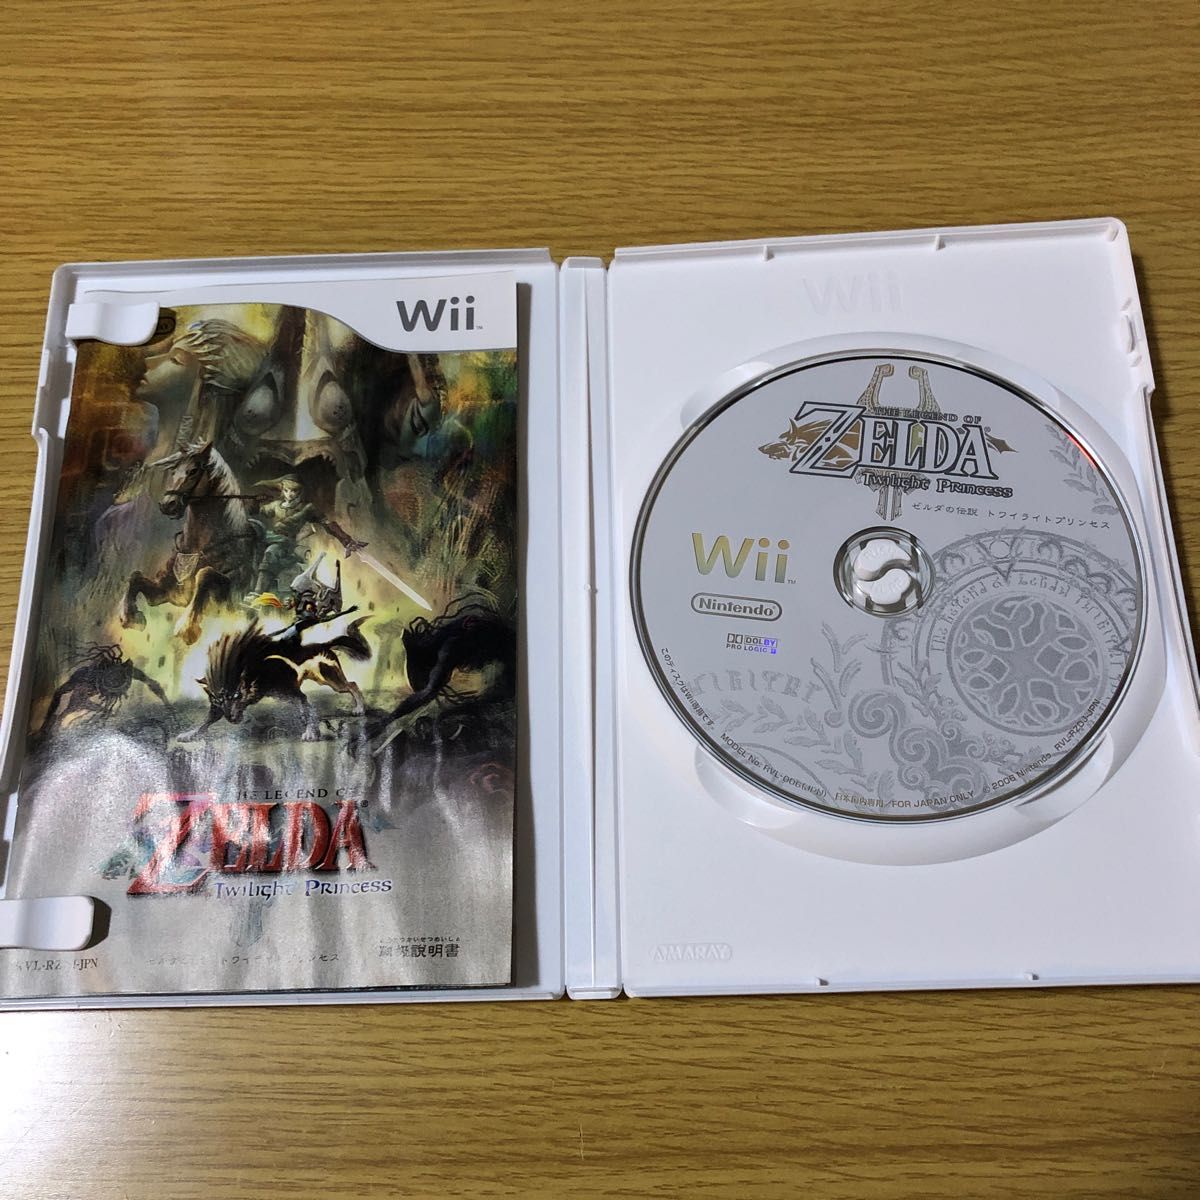 ゼルダの伝説スカイウォードソード Wii、ゼルダの伝説トワイライトプリンセスWii